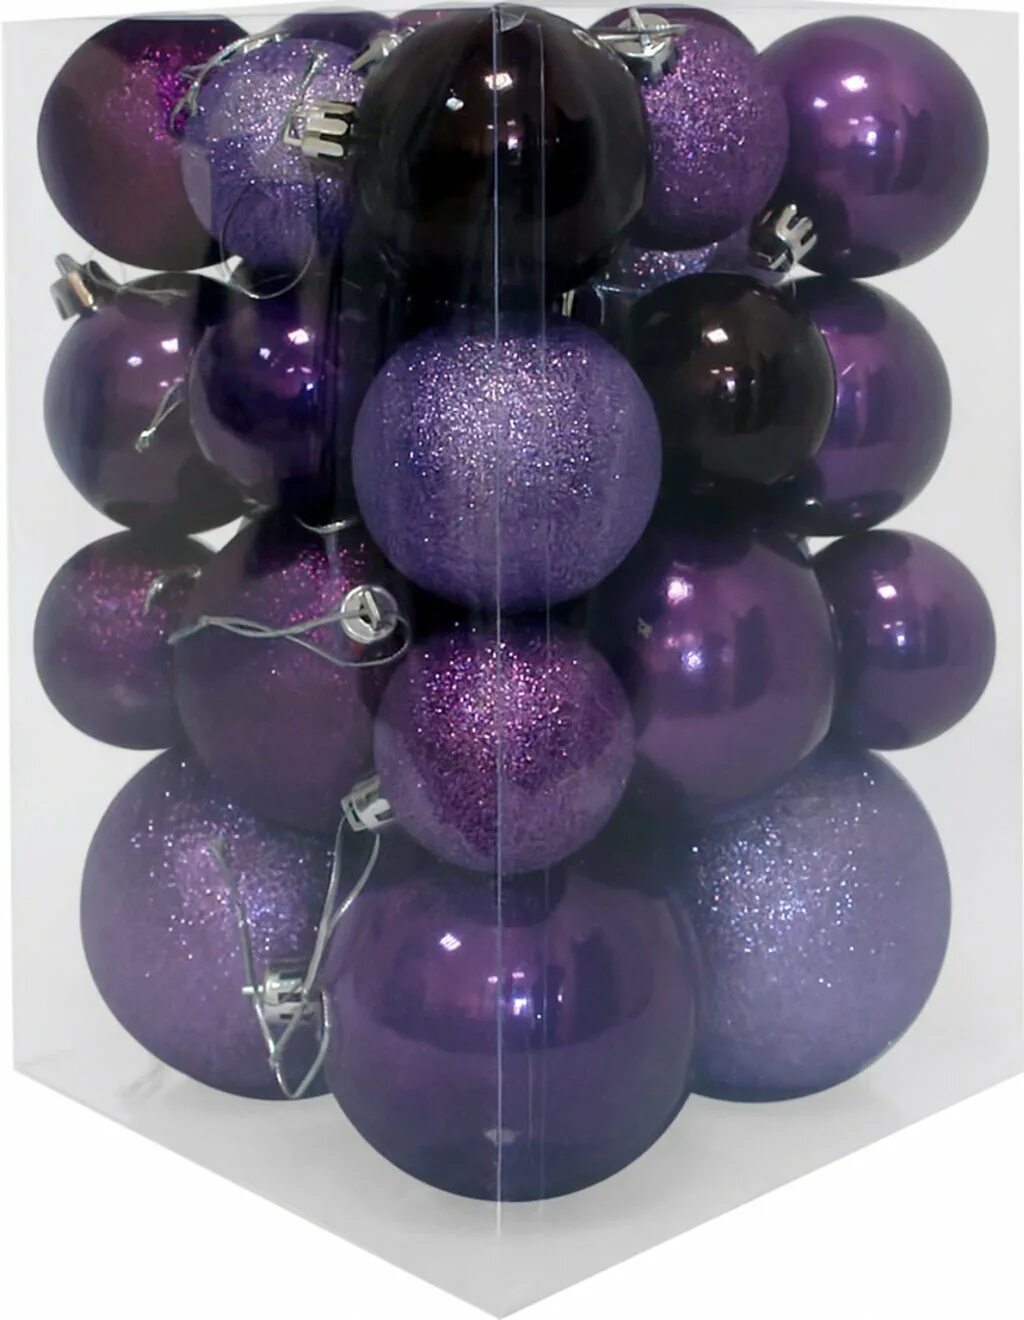 Шар фиолетового цвета. Фиолетовые шары на елку. Елка с фиолетовыми шариками. Набор шаров в фиолетовом цвете новогодний. Фиолетовый шарик.